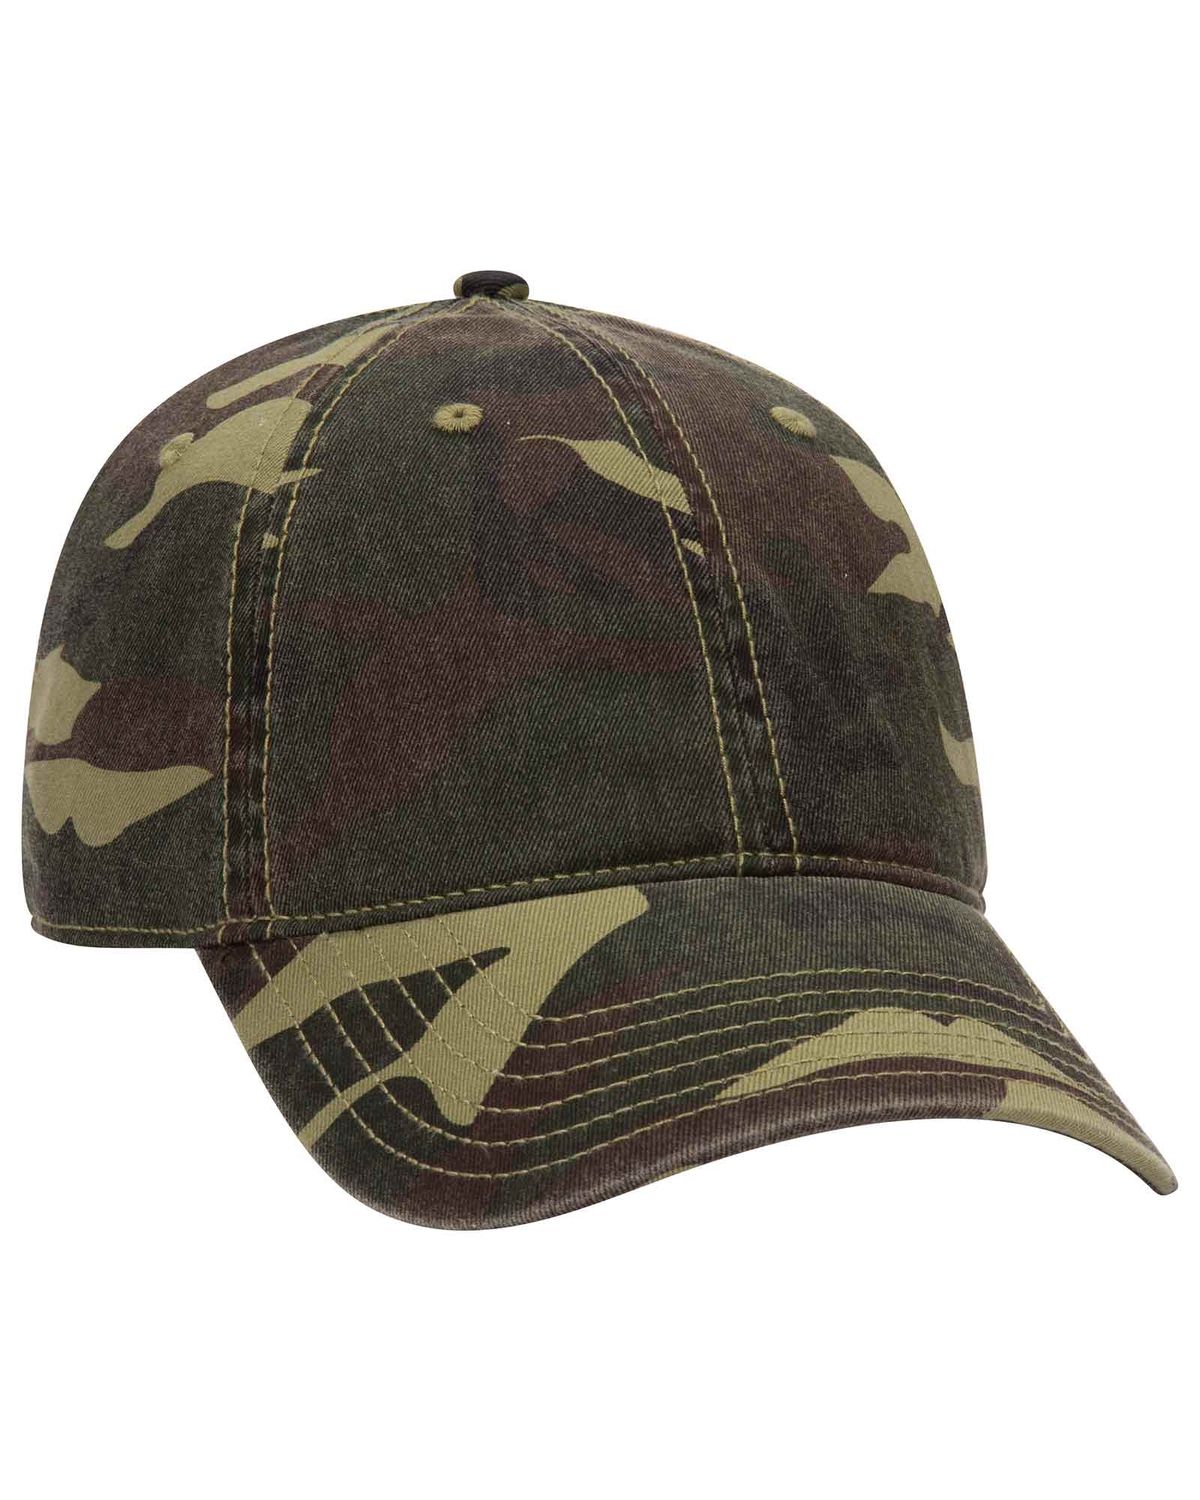 'OTTO 103 713 Otto cap camouflage 6 panel low profile baseball cap'